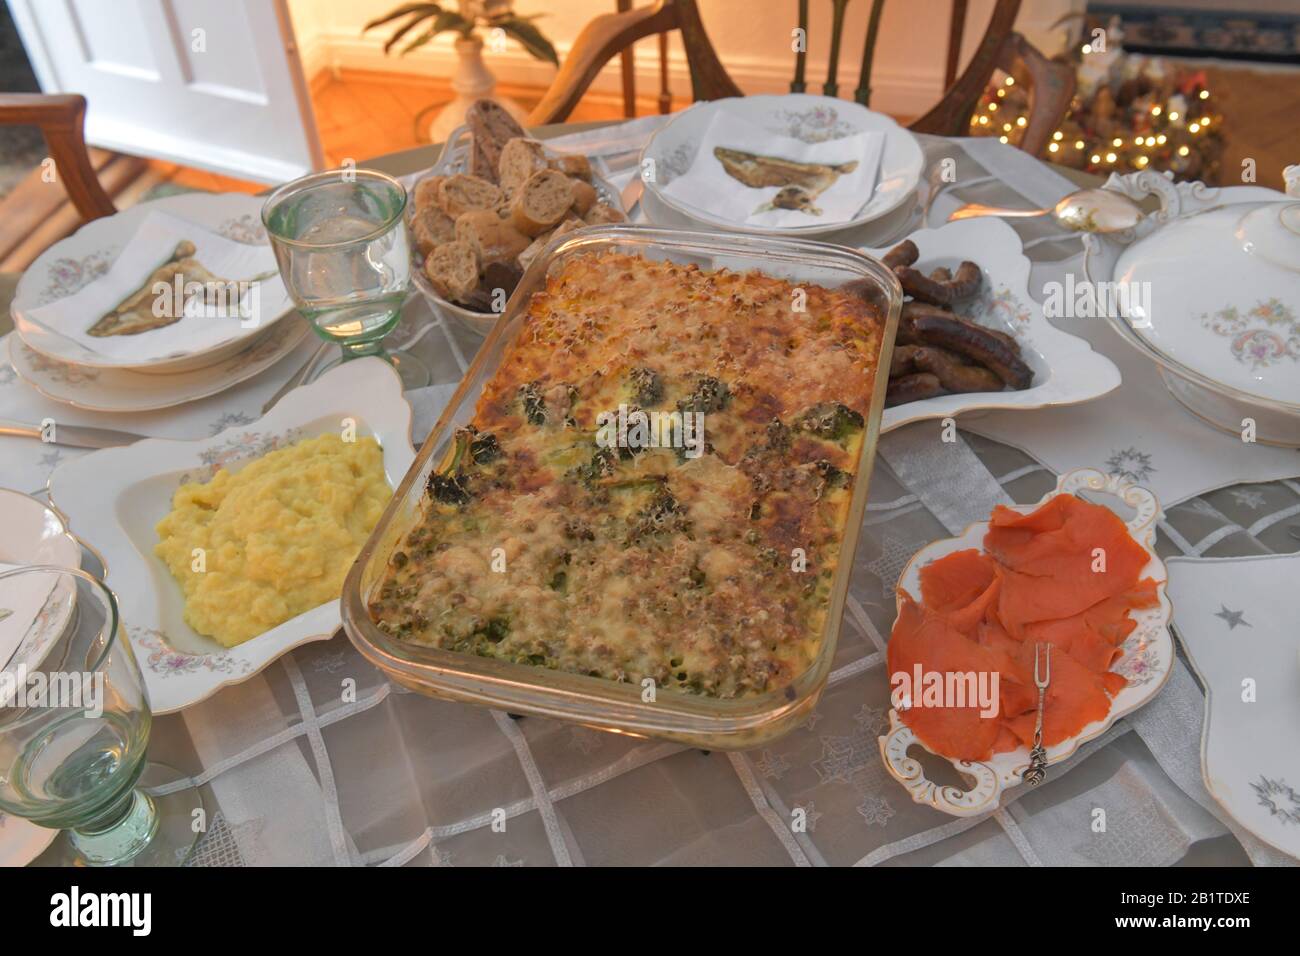 Gedeckter Tisch mit Essen, Auflauf, Tischdecke Stock Photo